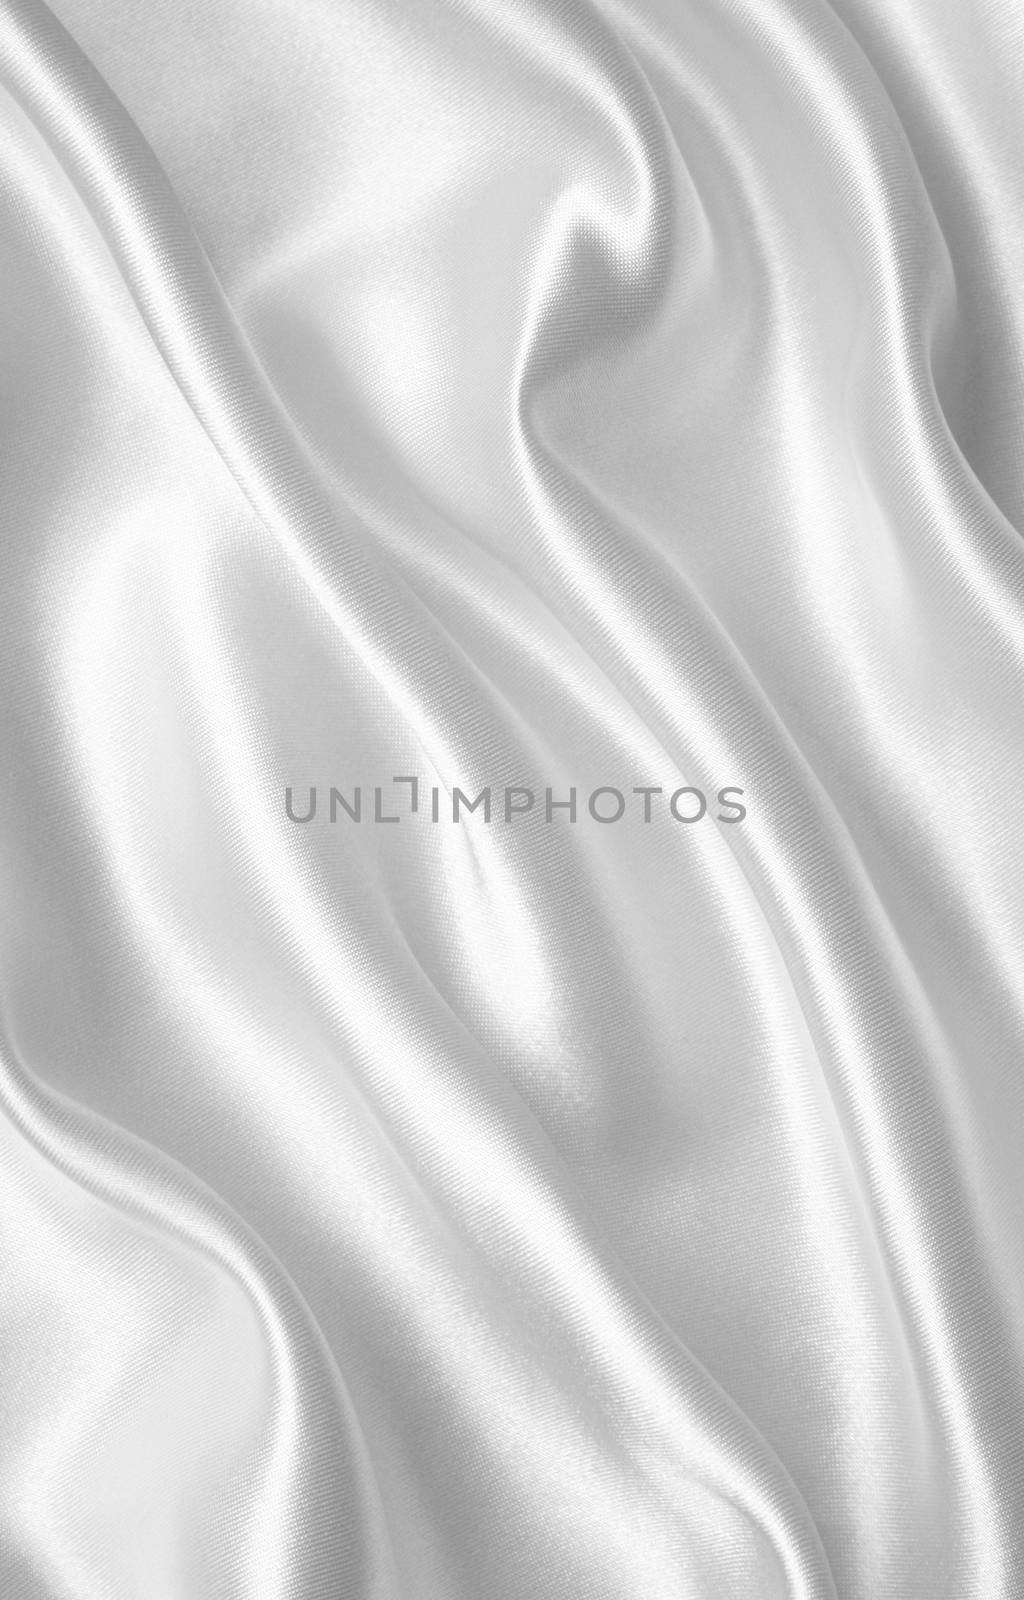 Smooth elegant white silk or satin texture as wedding background ...